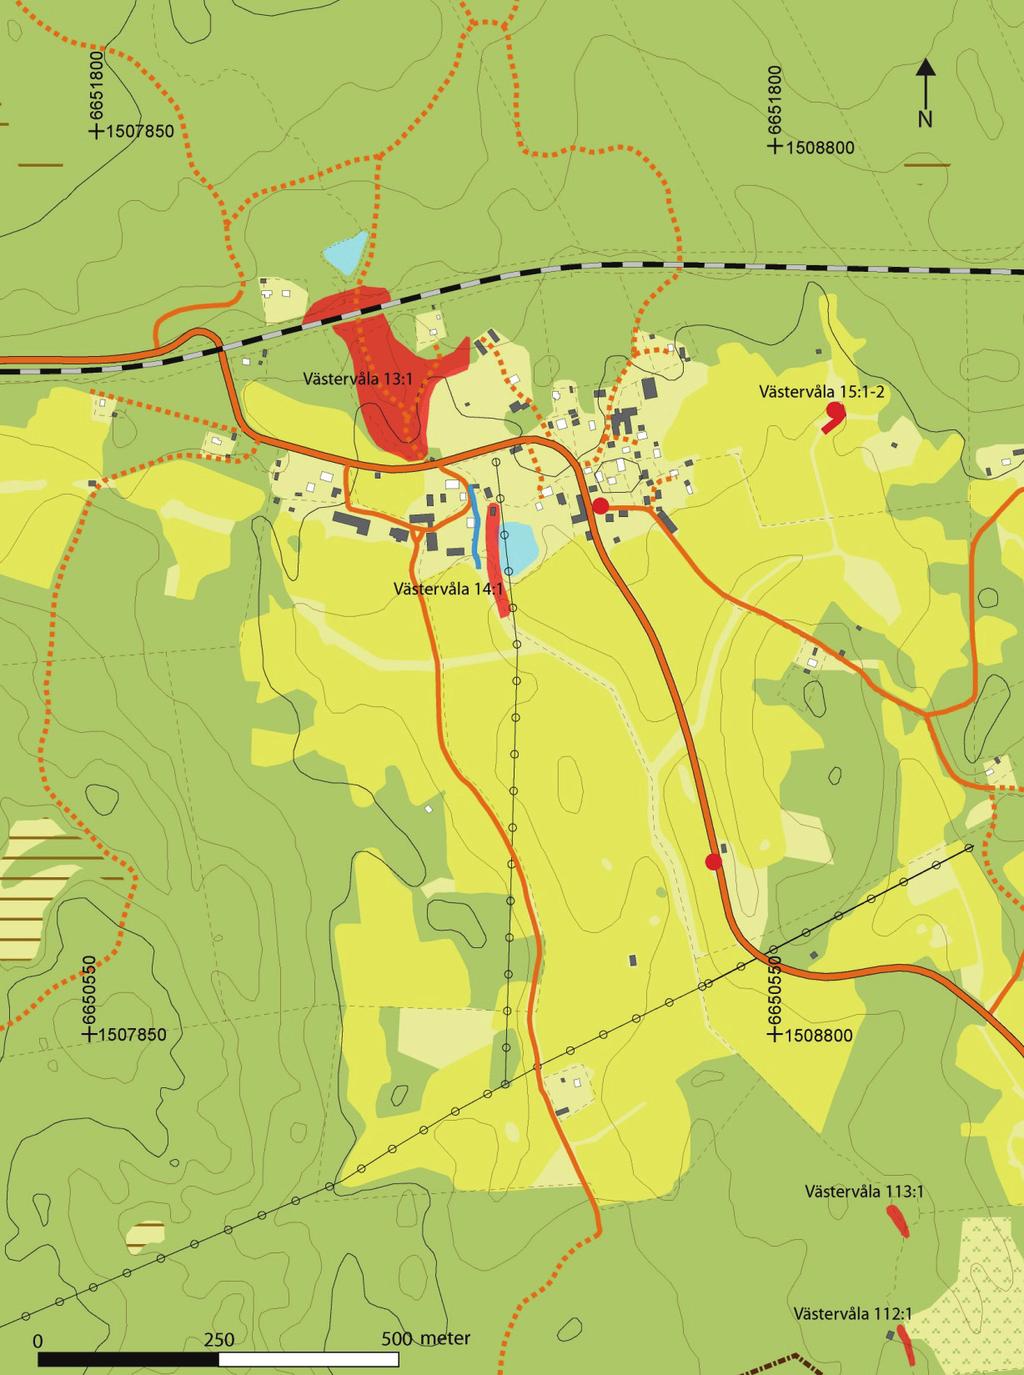 Figur 2. Utdrag ur den digitala fastighetskartan. Undersökningsområdet inom hyttområdet Västervåla 14 är markerat med blå linje.